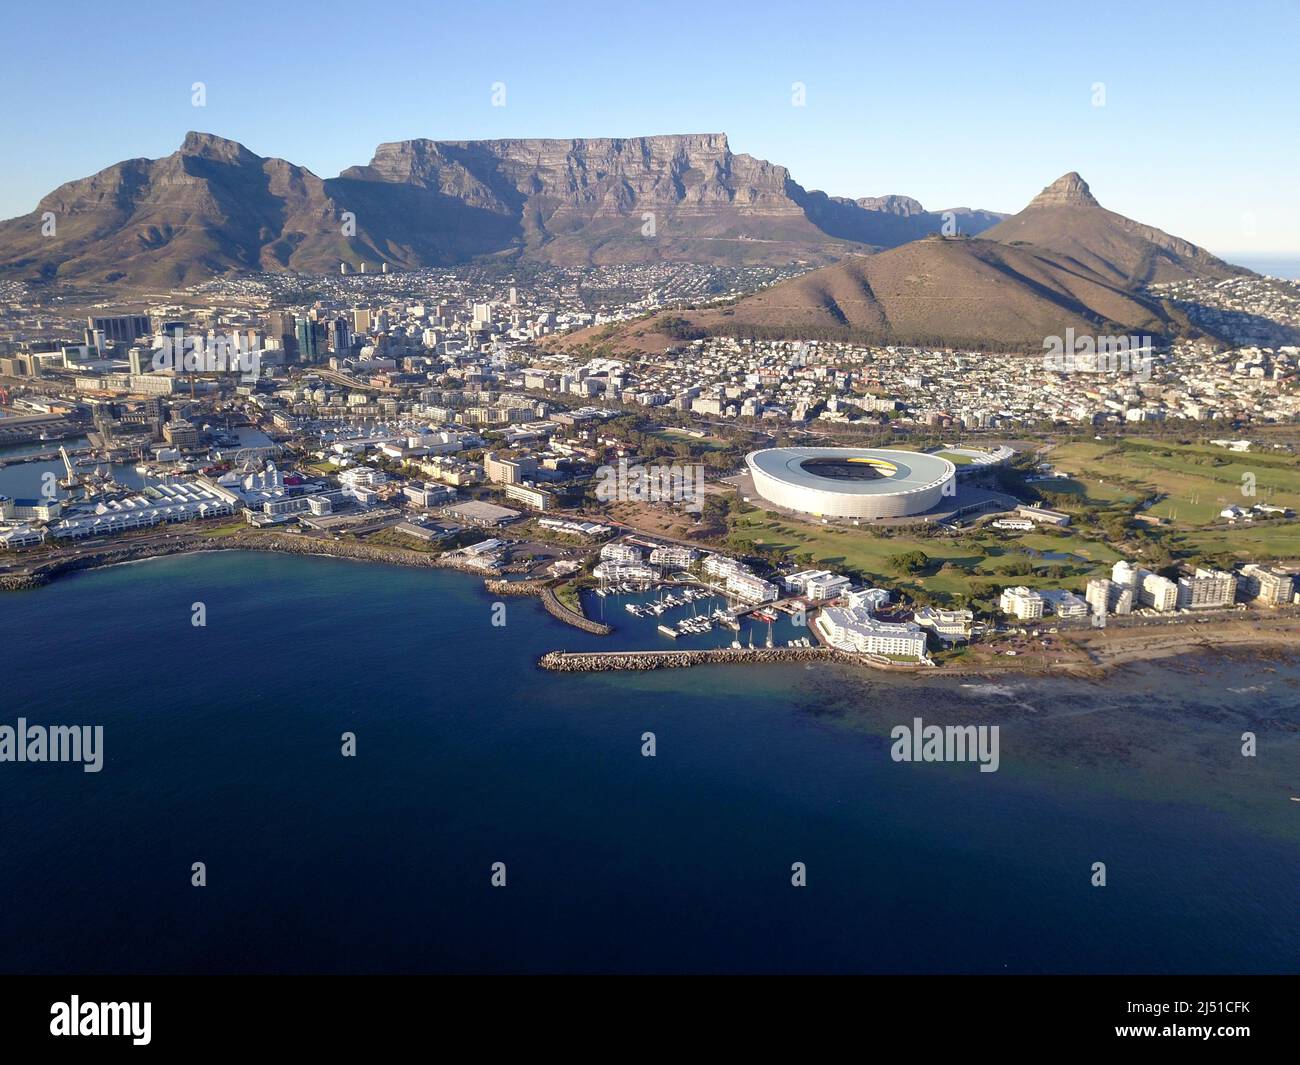 Le Cap, Afrique du Sud - 19 avril 2022 : vue aérienne sur le Cap, avec le stade du Cap et la montagne de la Table . Banque D'Images